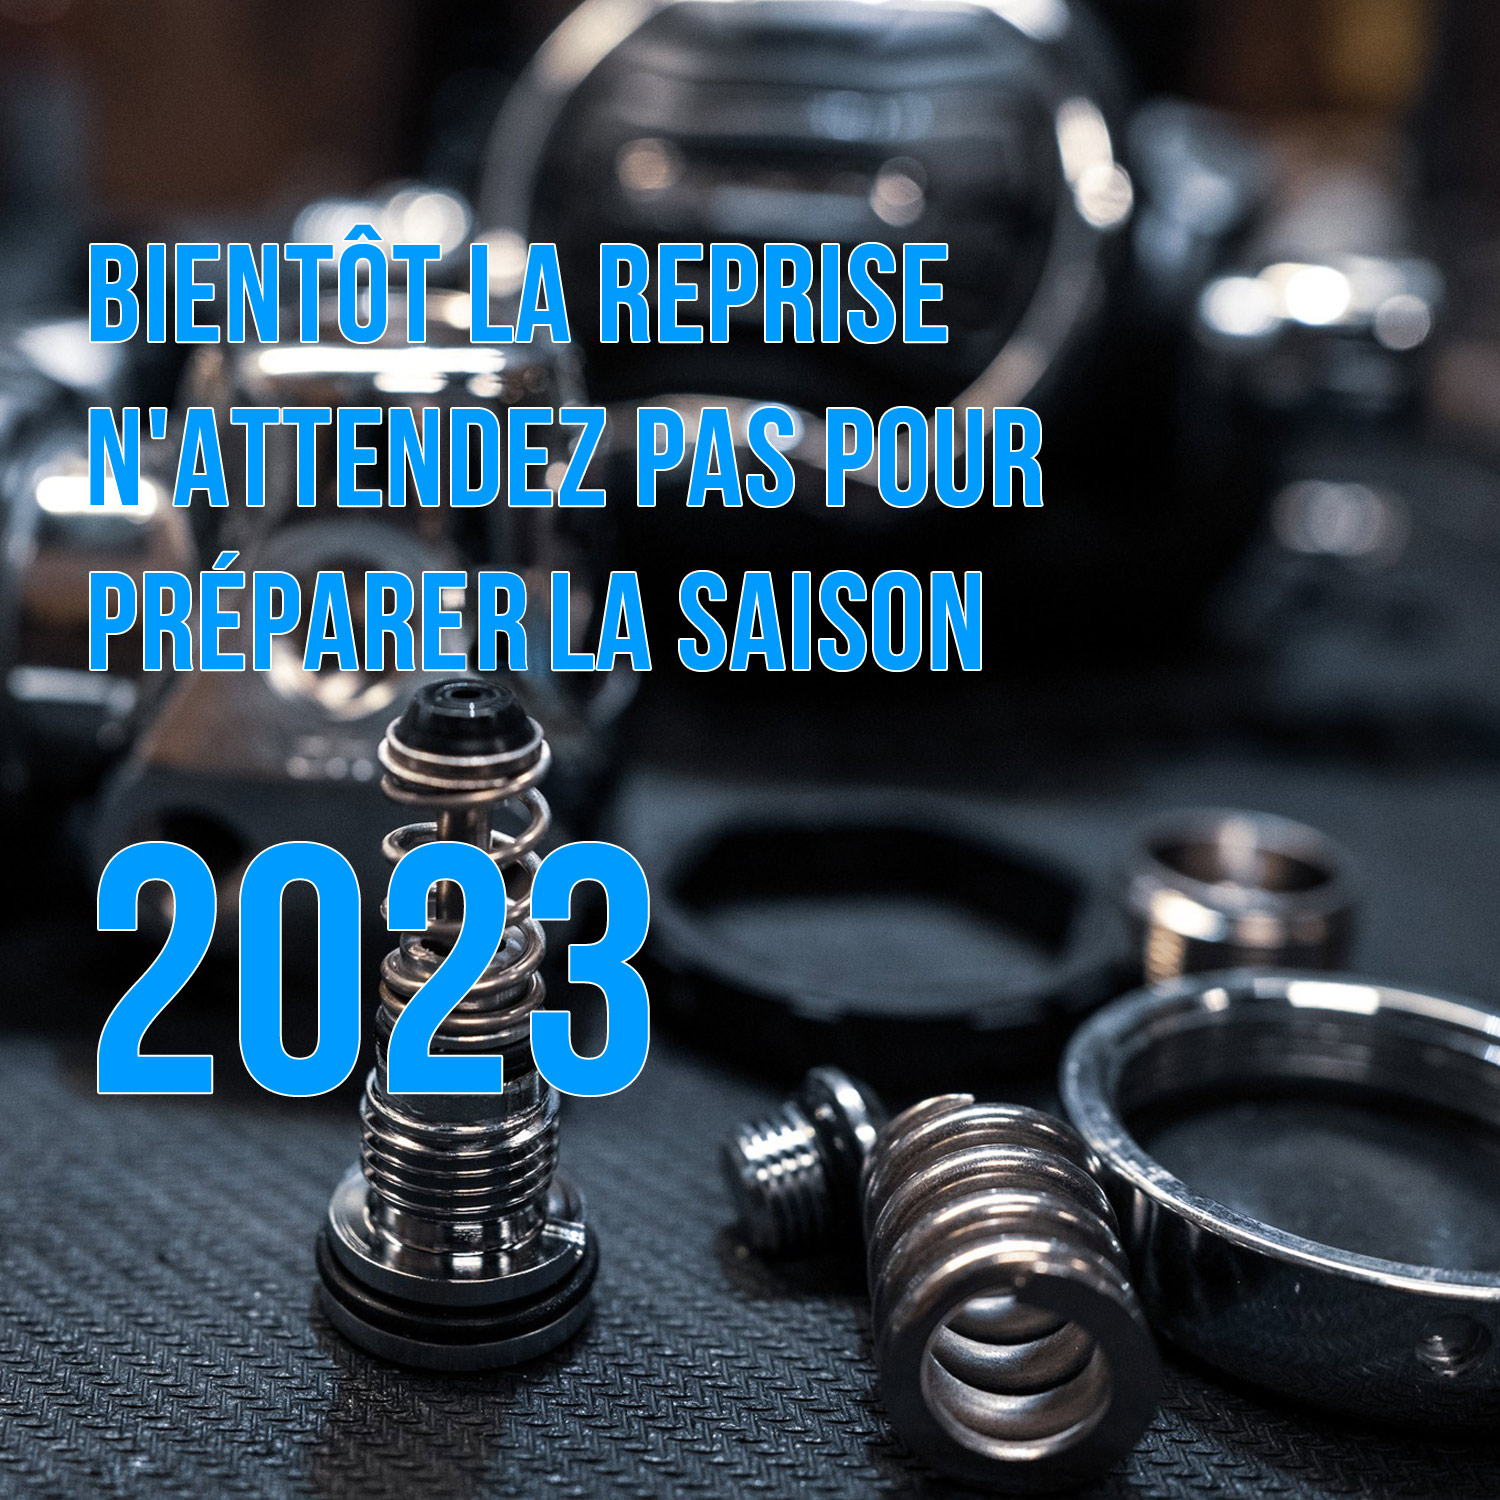 BIENTOT LA REPRISE Préparez la saison 2023 !